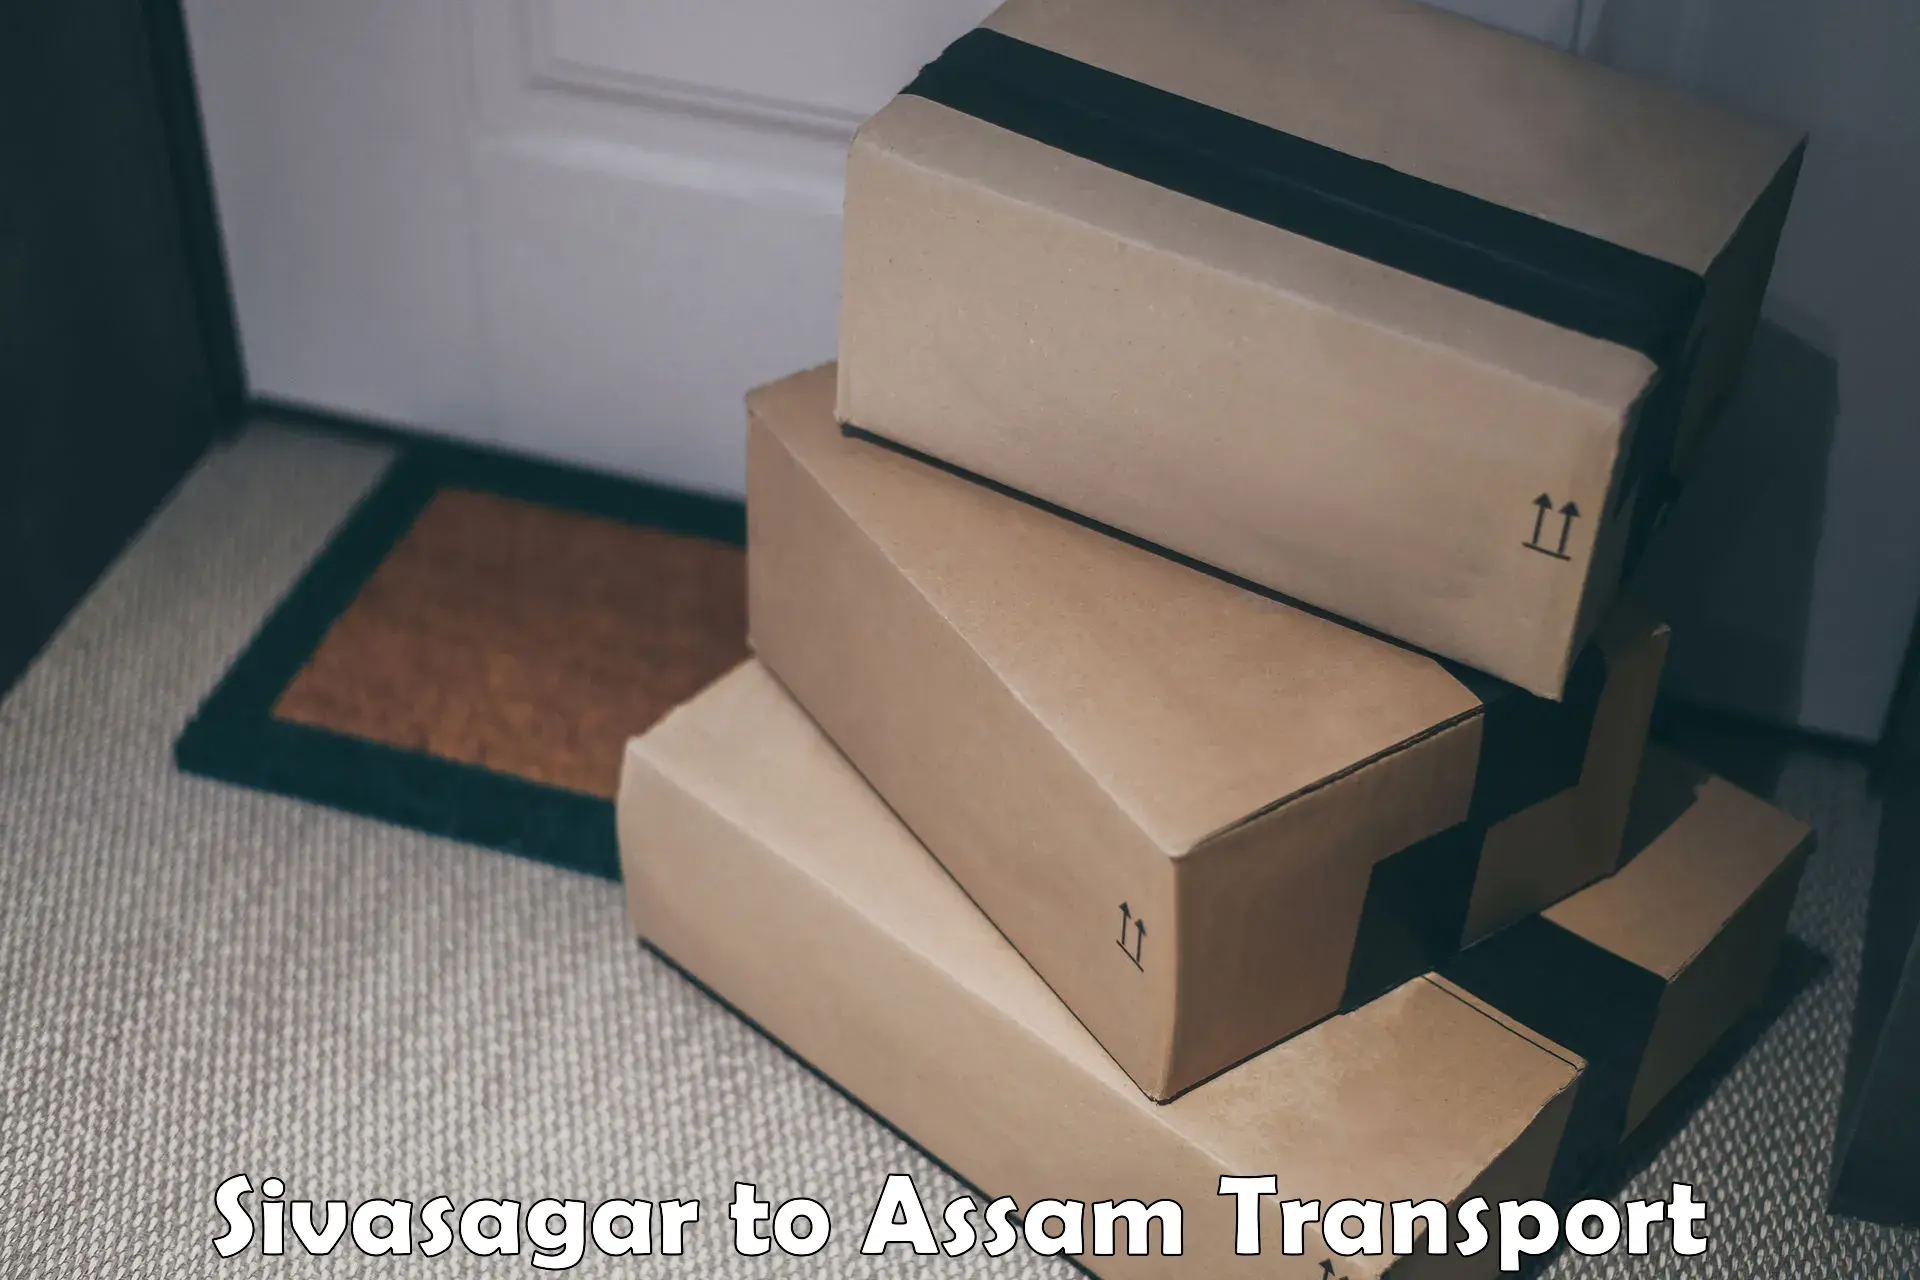 Cargo transportation services Sivasagar to Tezpur